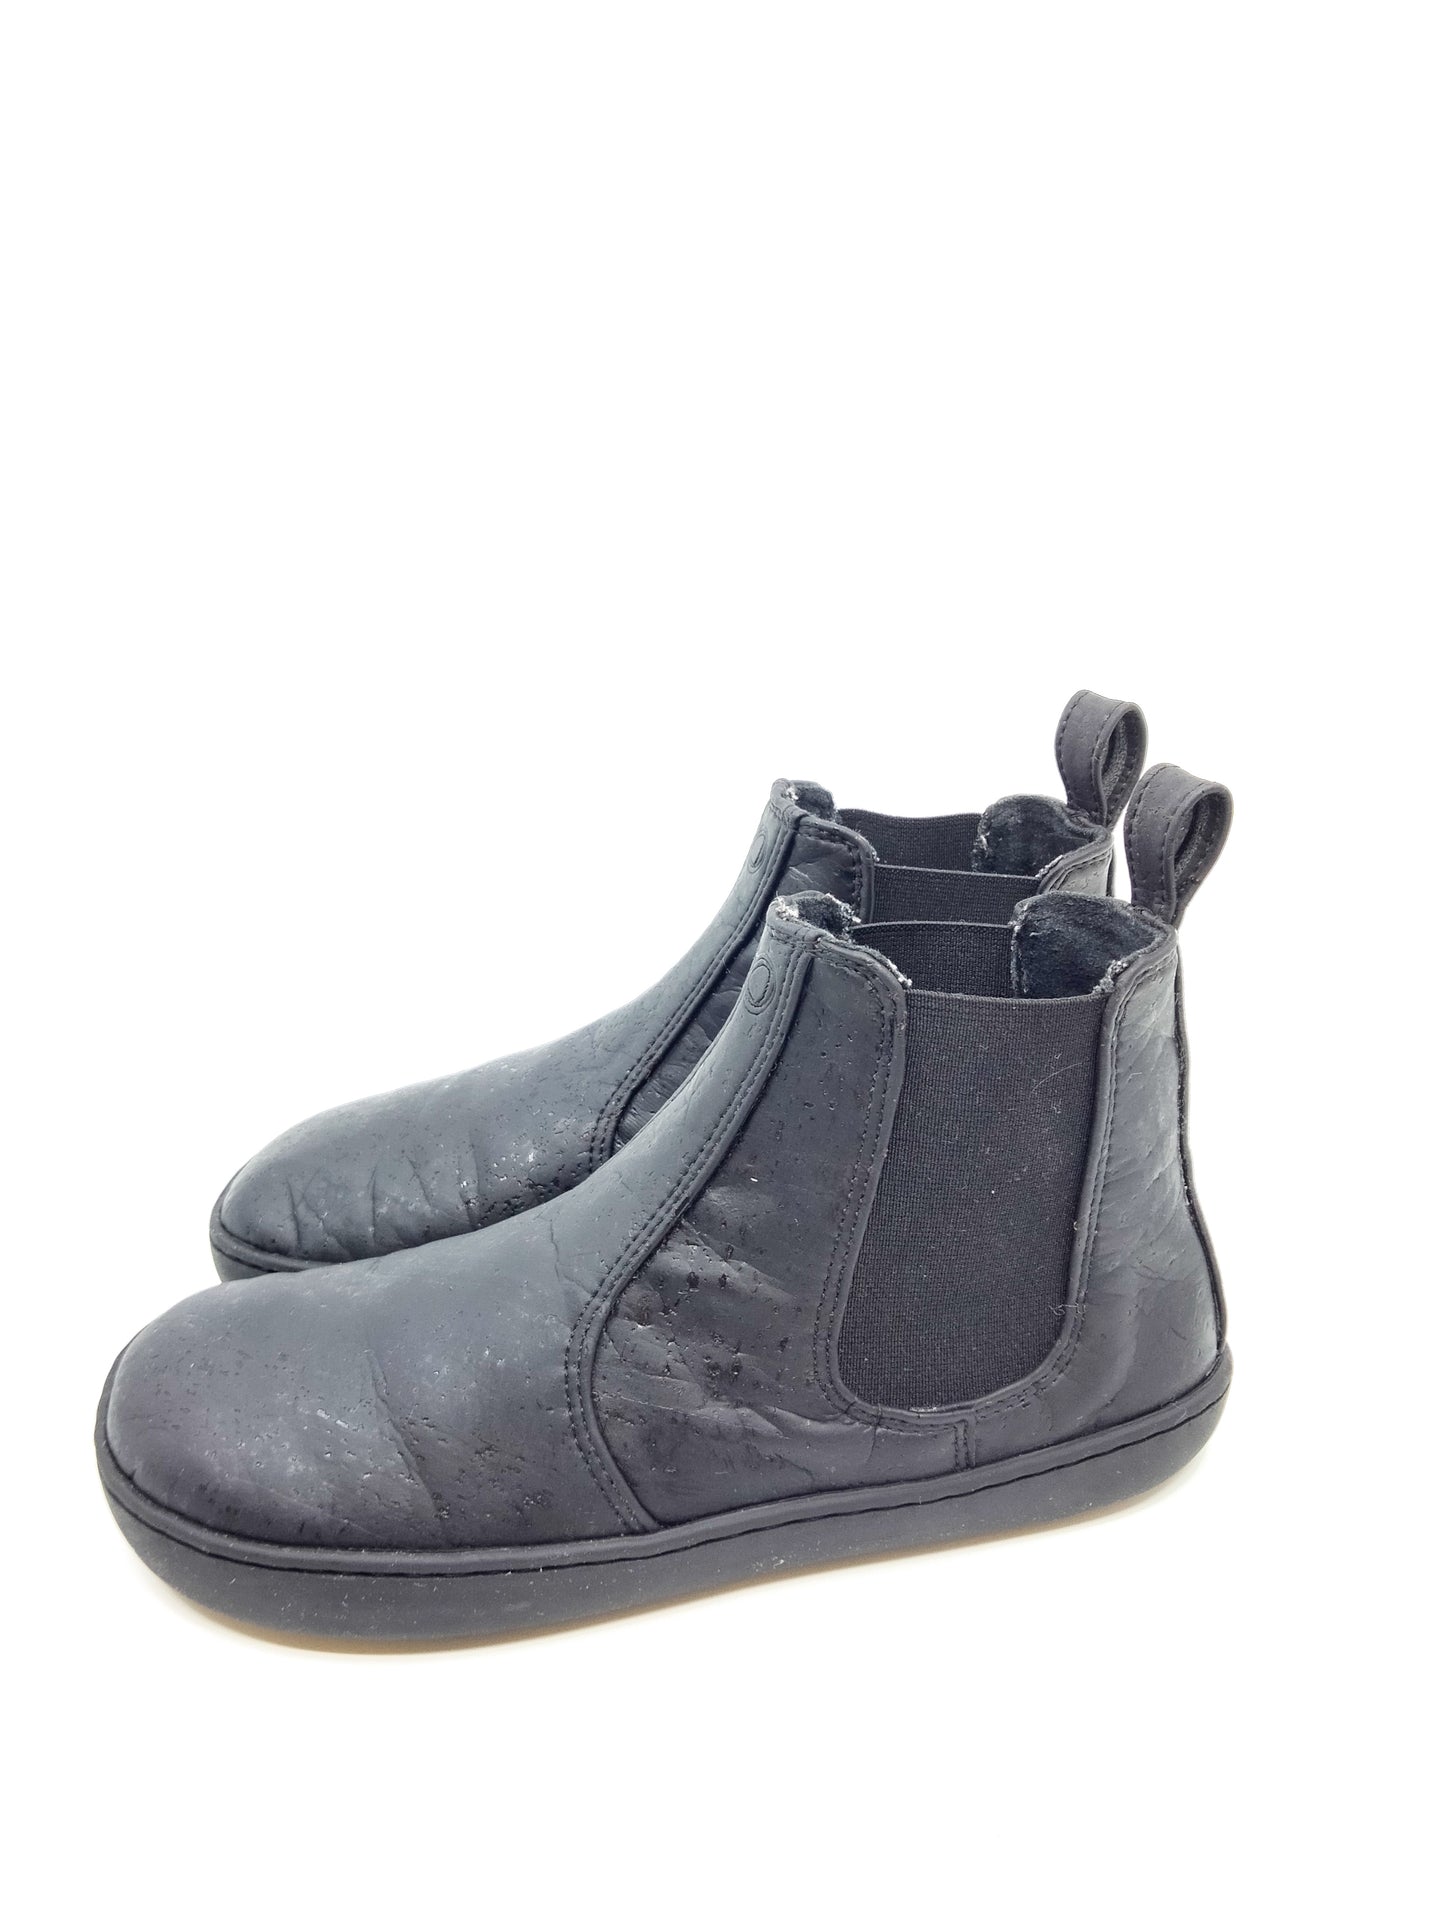 Musta vegaaninen chelsea boots tyyppinen kenkä